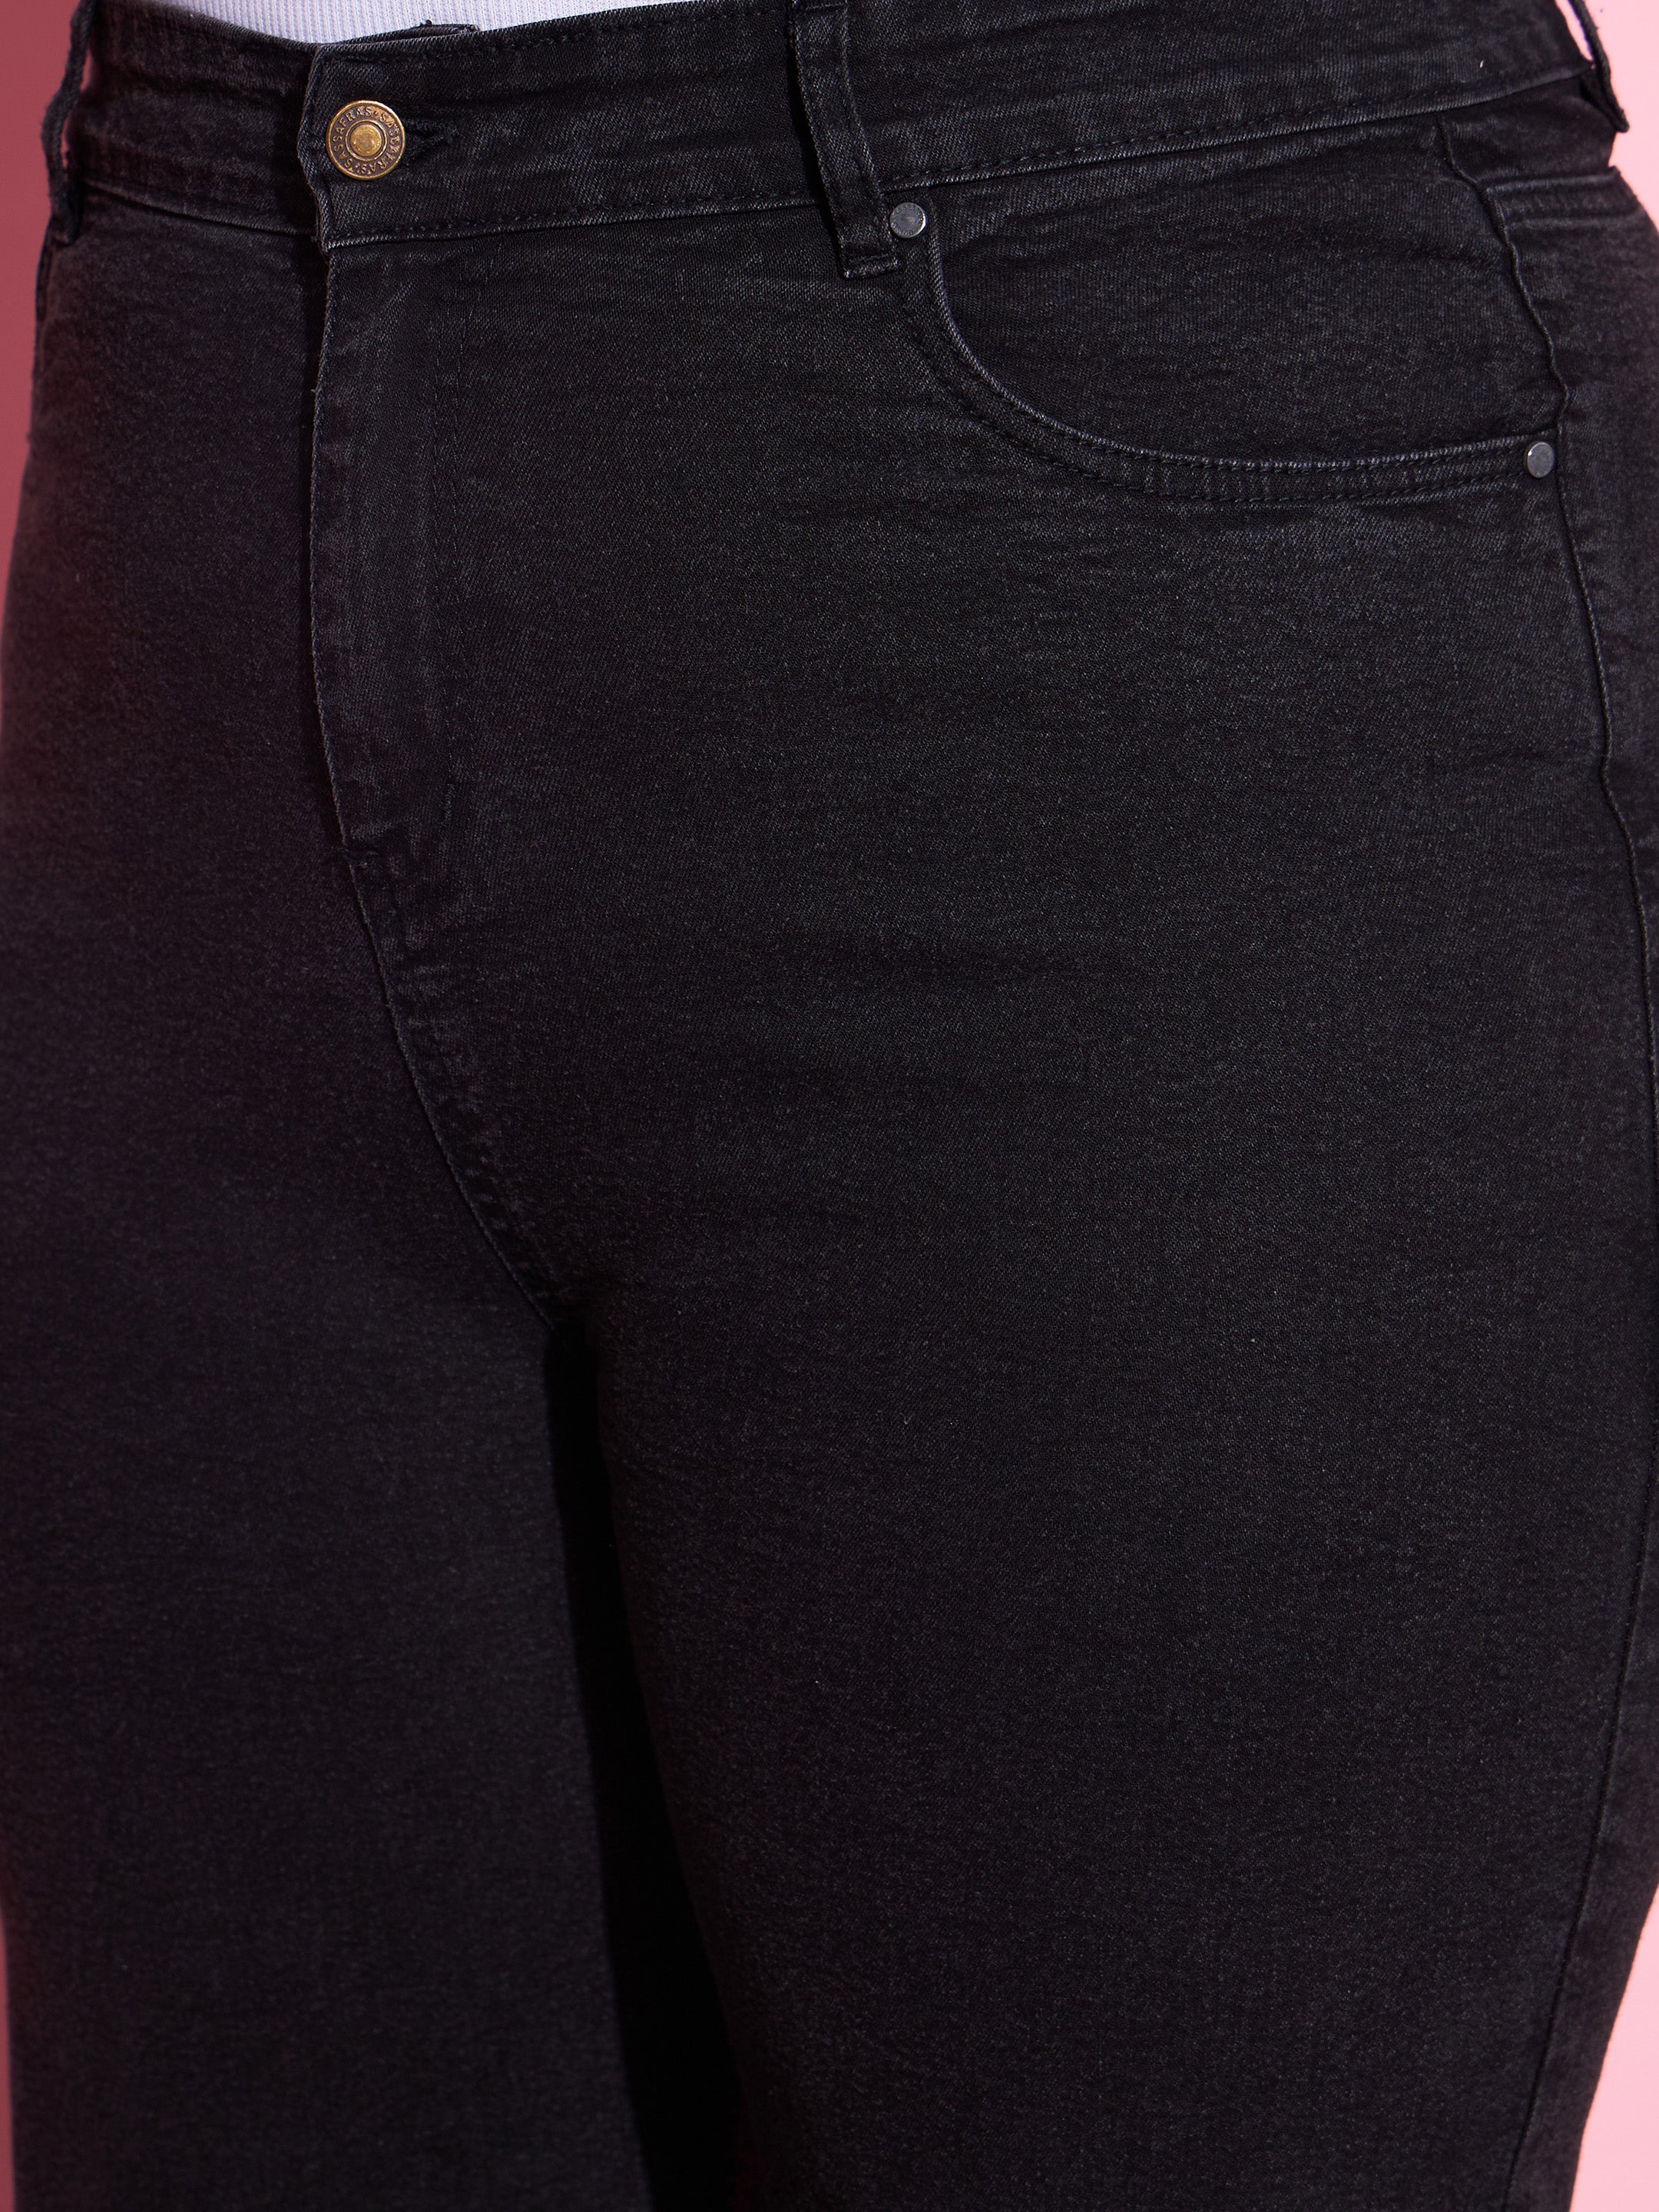 Women's Black Acid Wash Denim Bell Bottom Jeans - SASSAFRAS